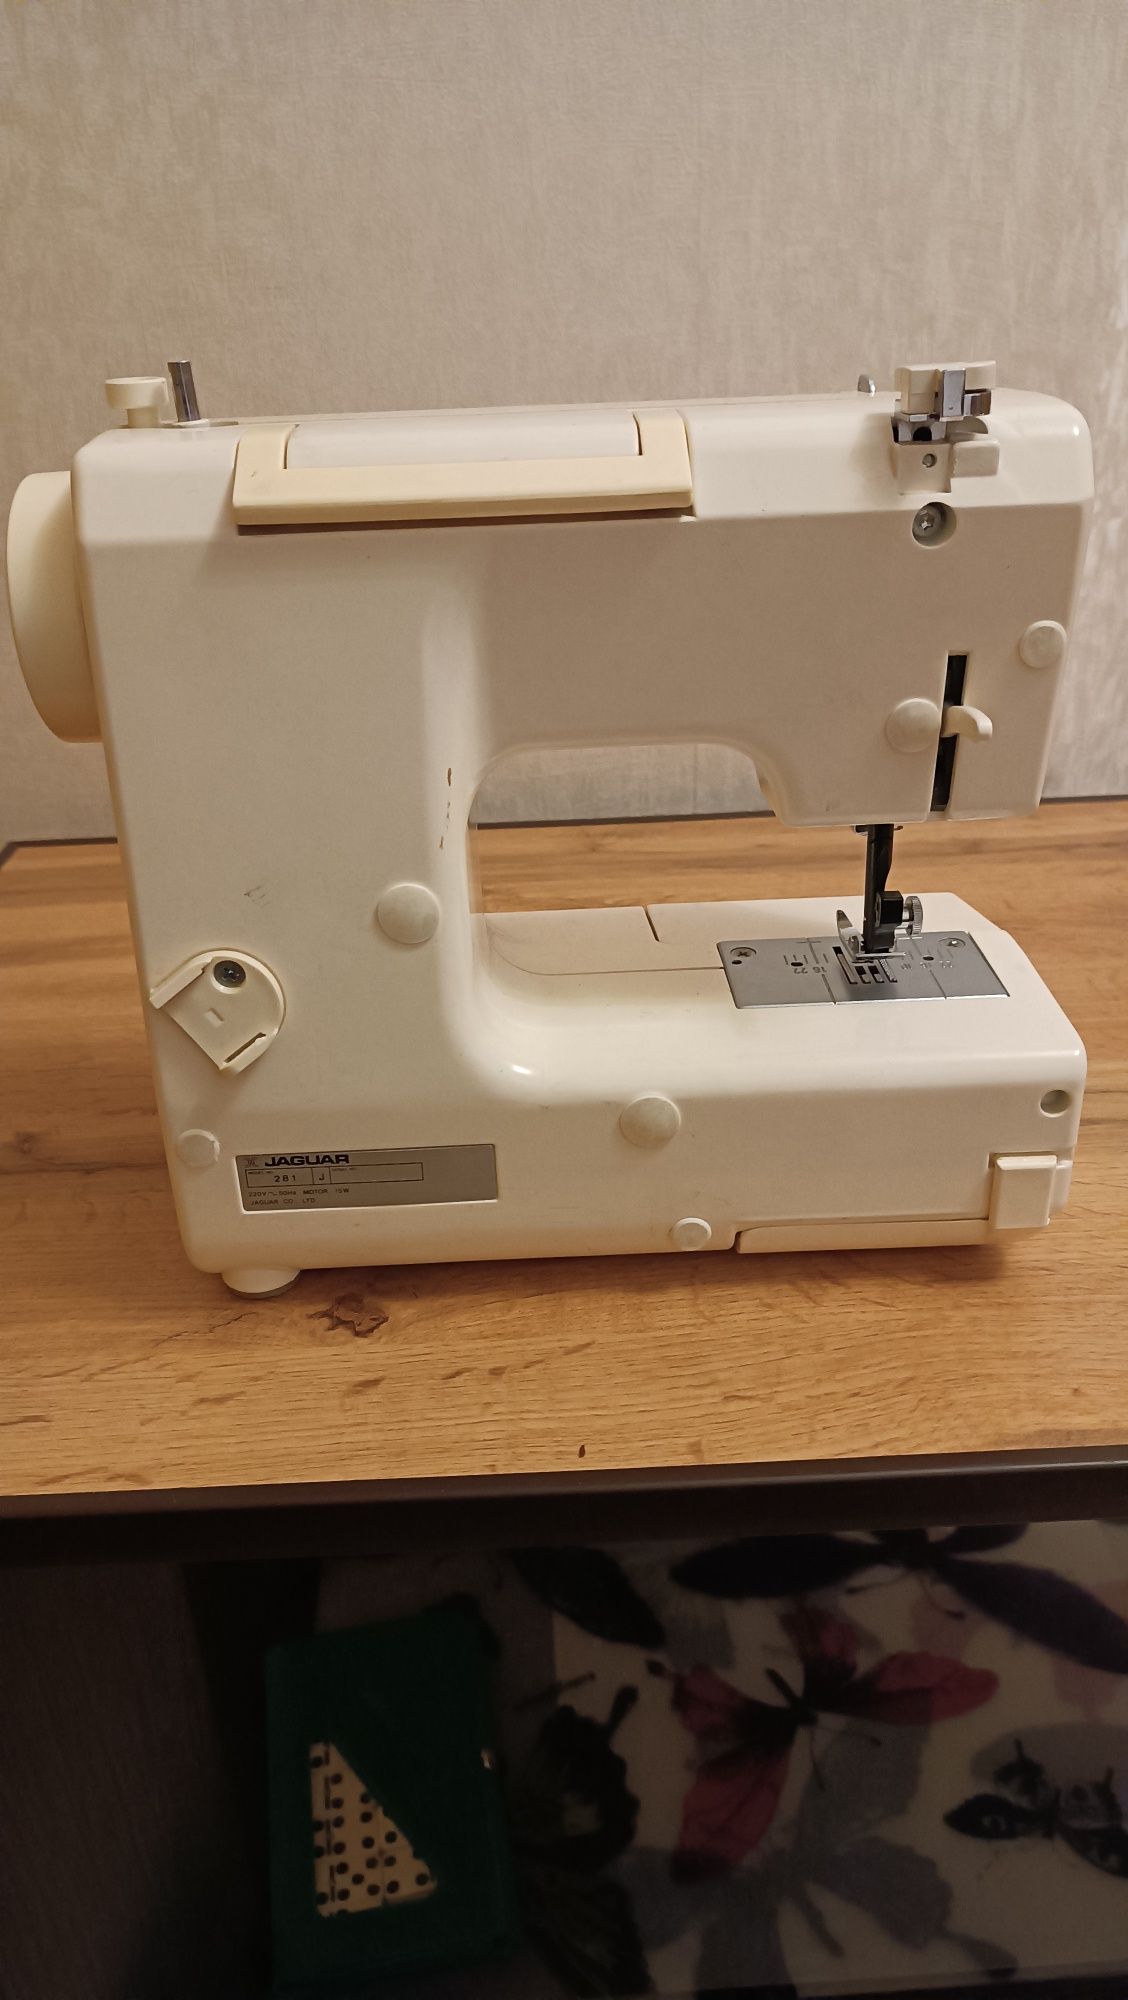 Швейная машинка очень удобная небольшая всё умеет делать